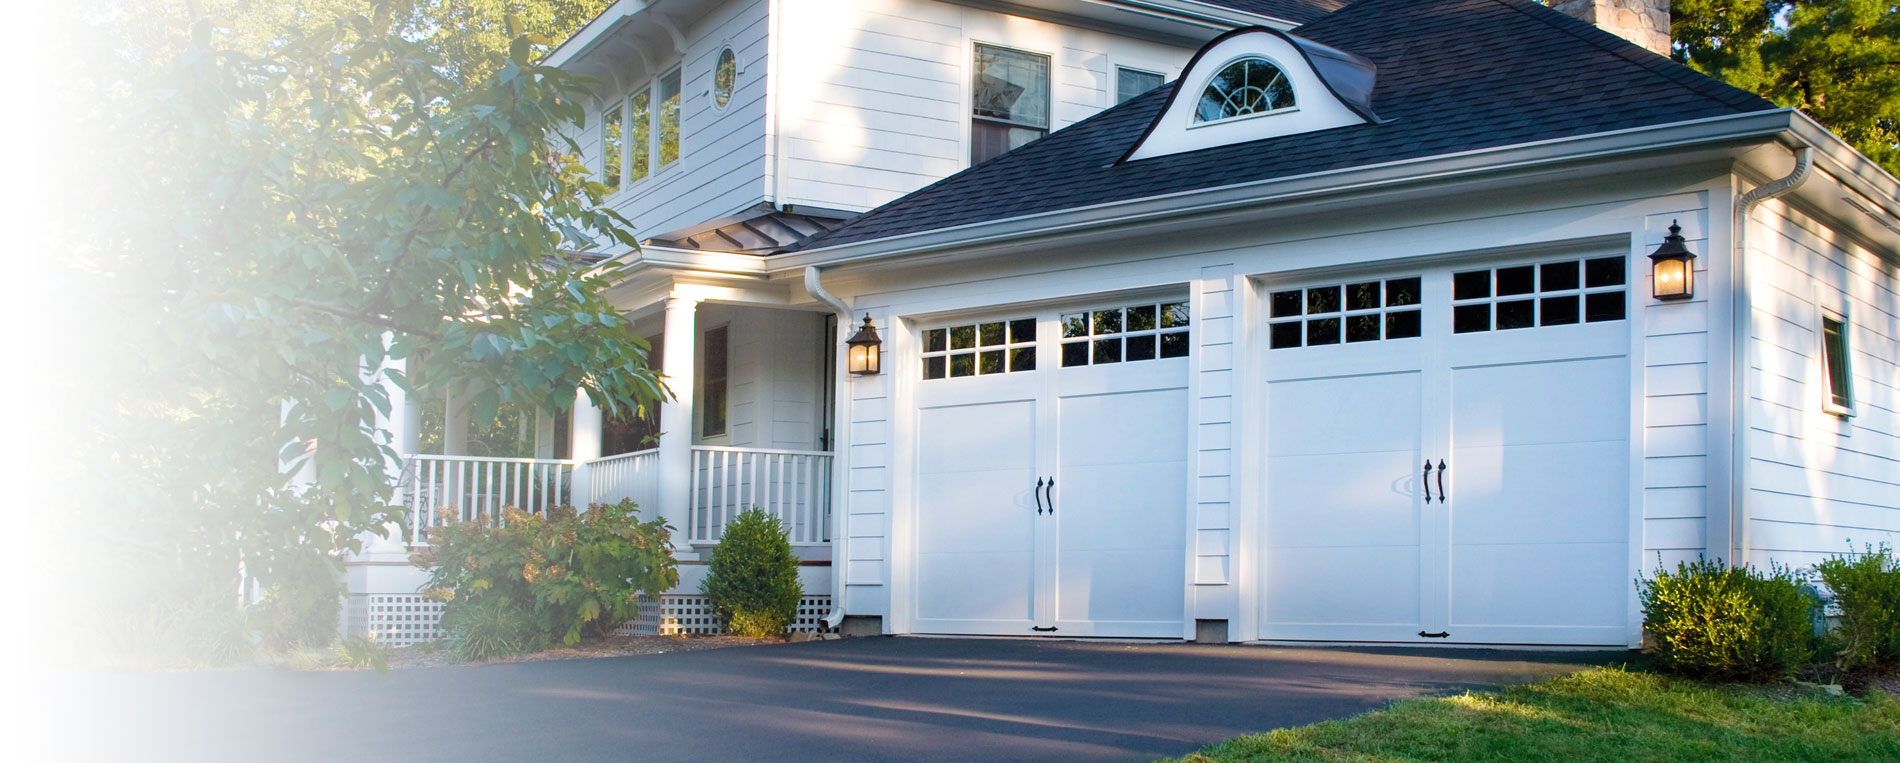 Top Maintenance Tips for Garage Door Owners